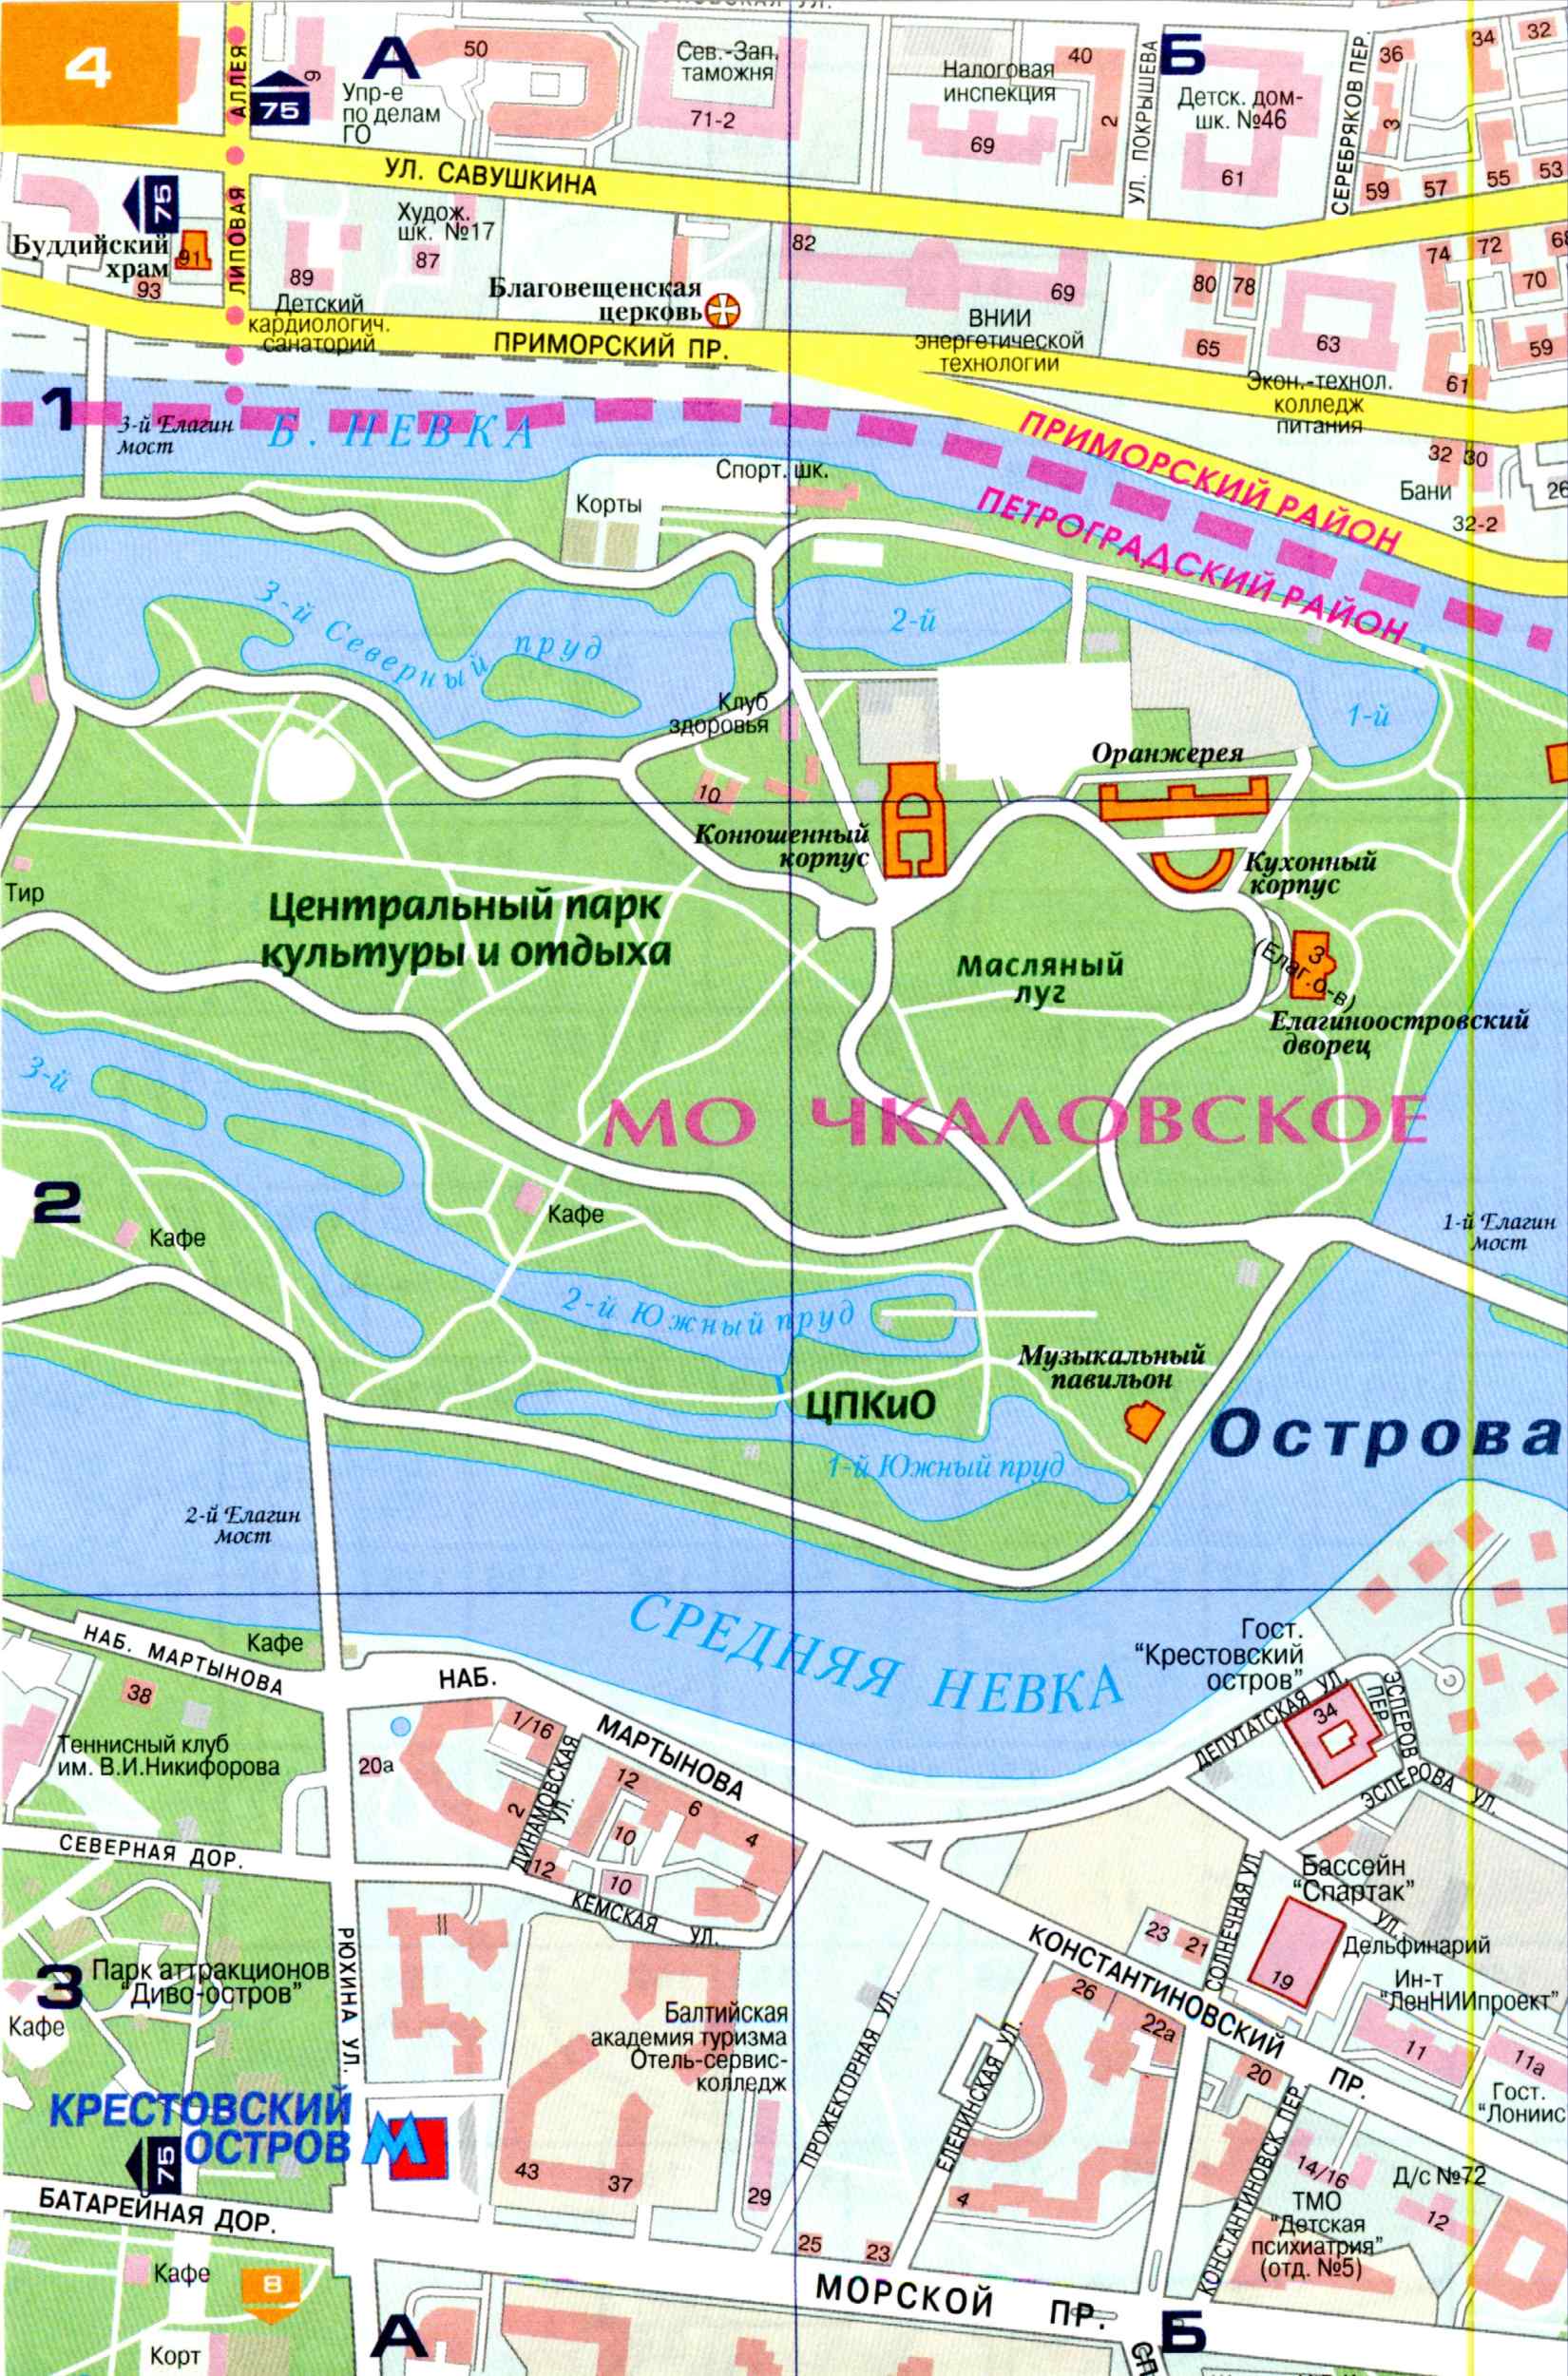 Карта Санкт-Петербурга (Россия) на русском языке, расположение на картемира с городами, метро, центра, районов и округов